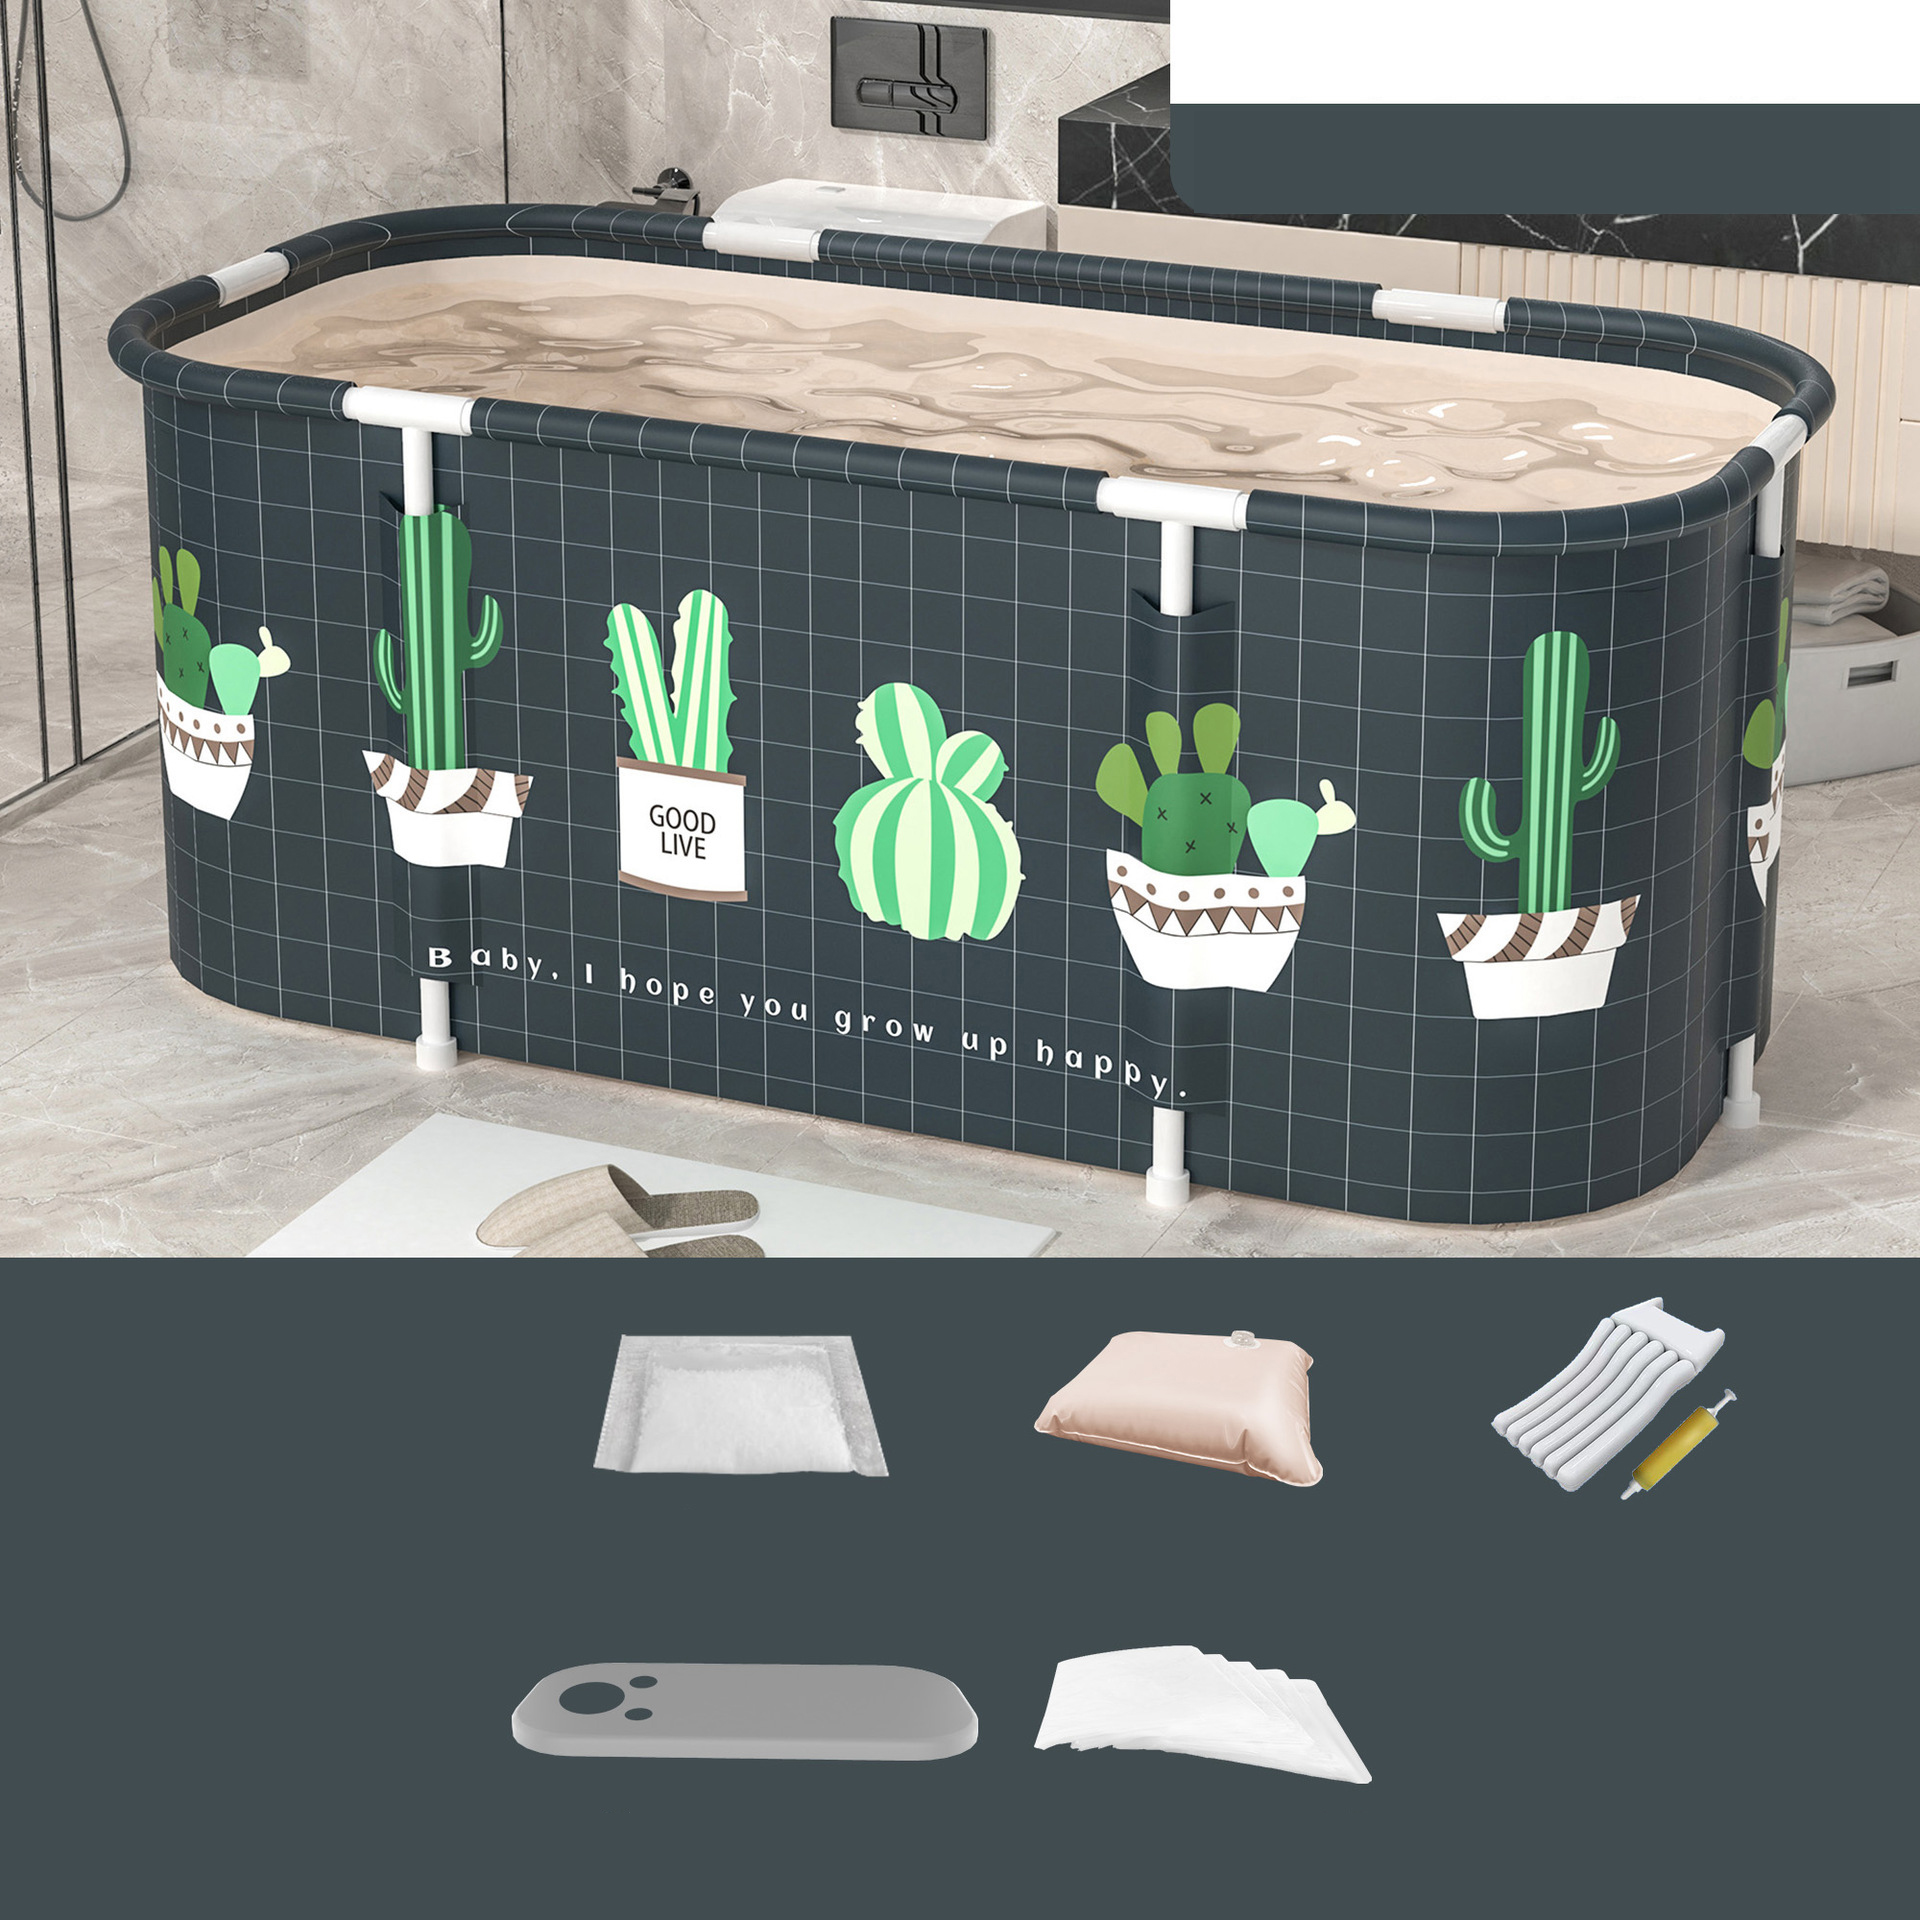 Cactus Set 2: Standard cushion pump bath cover Bath bag *10